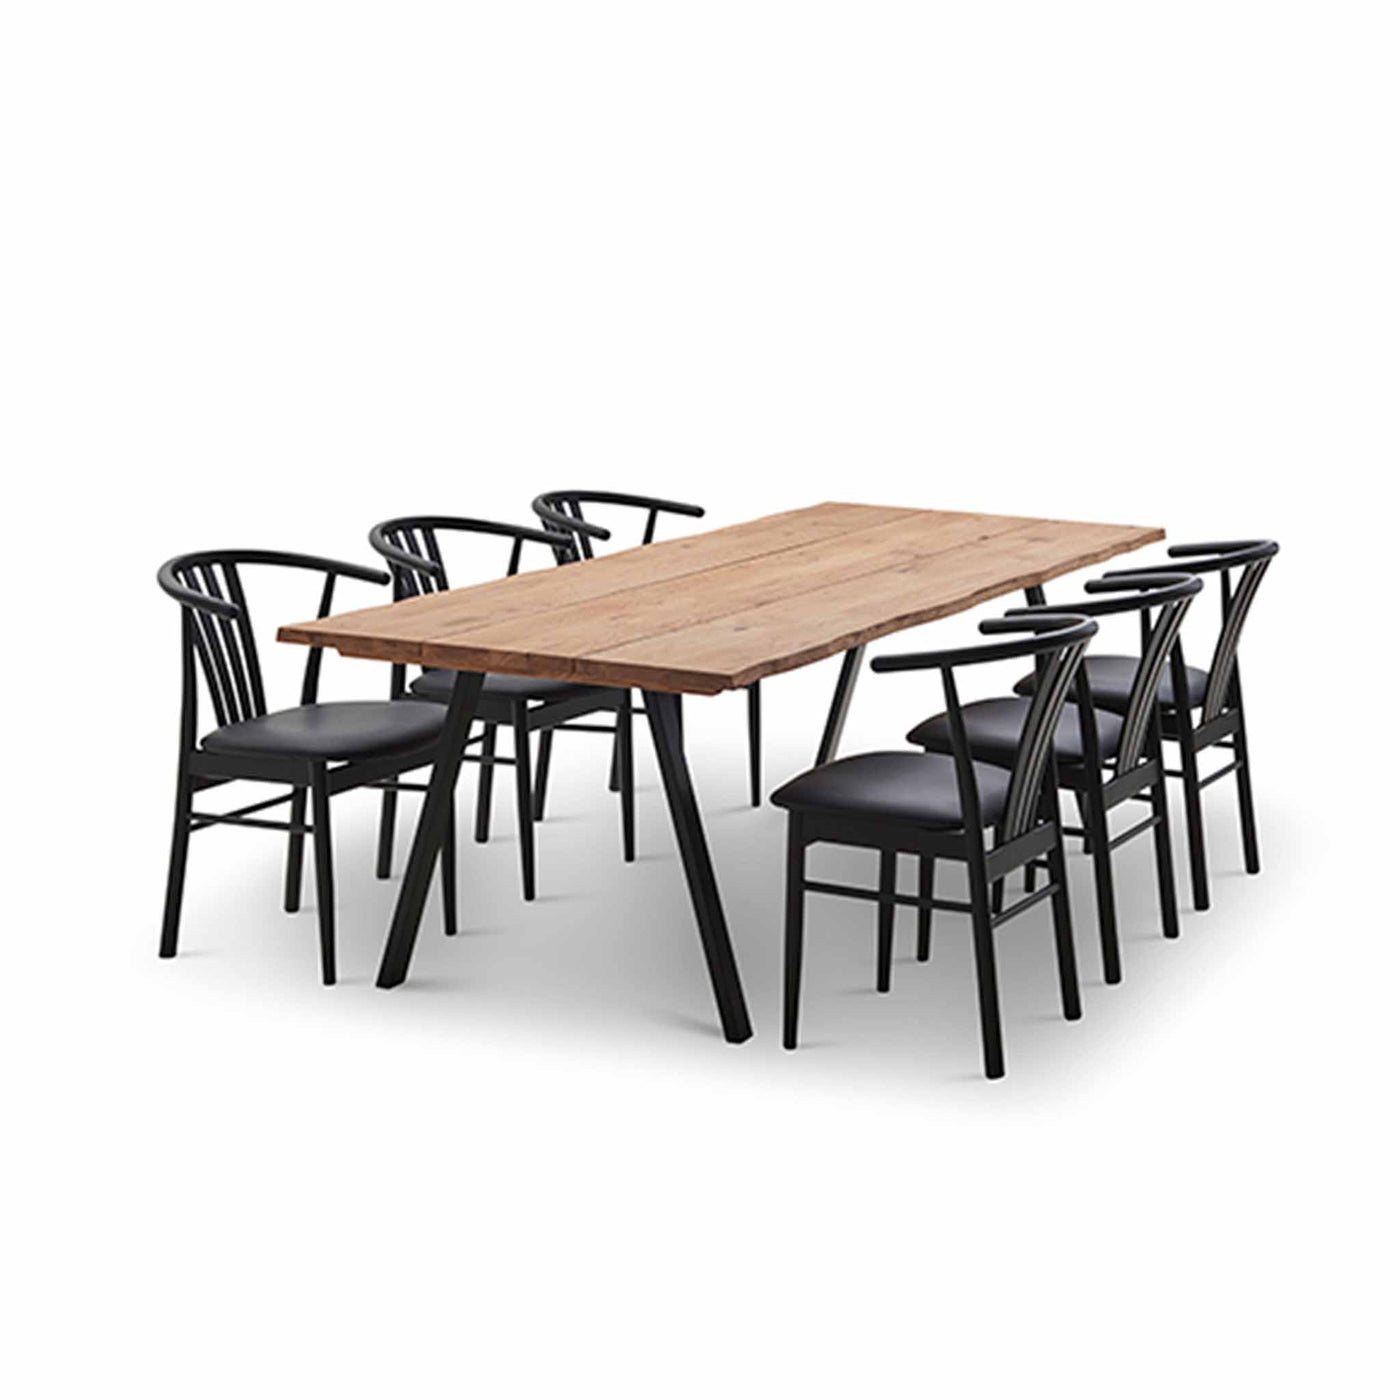 Svane Design spisebordssæt med Samsø plankebord og Salon spisebordsstole.